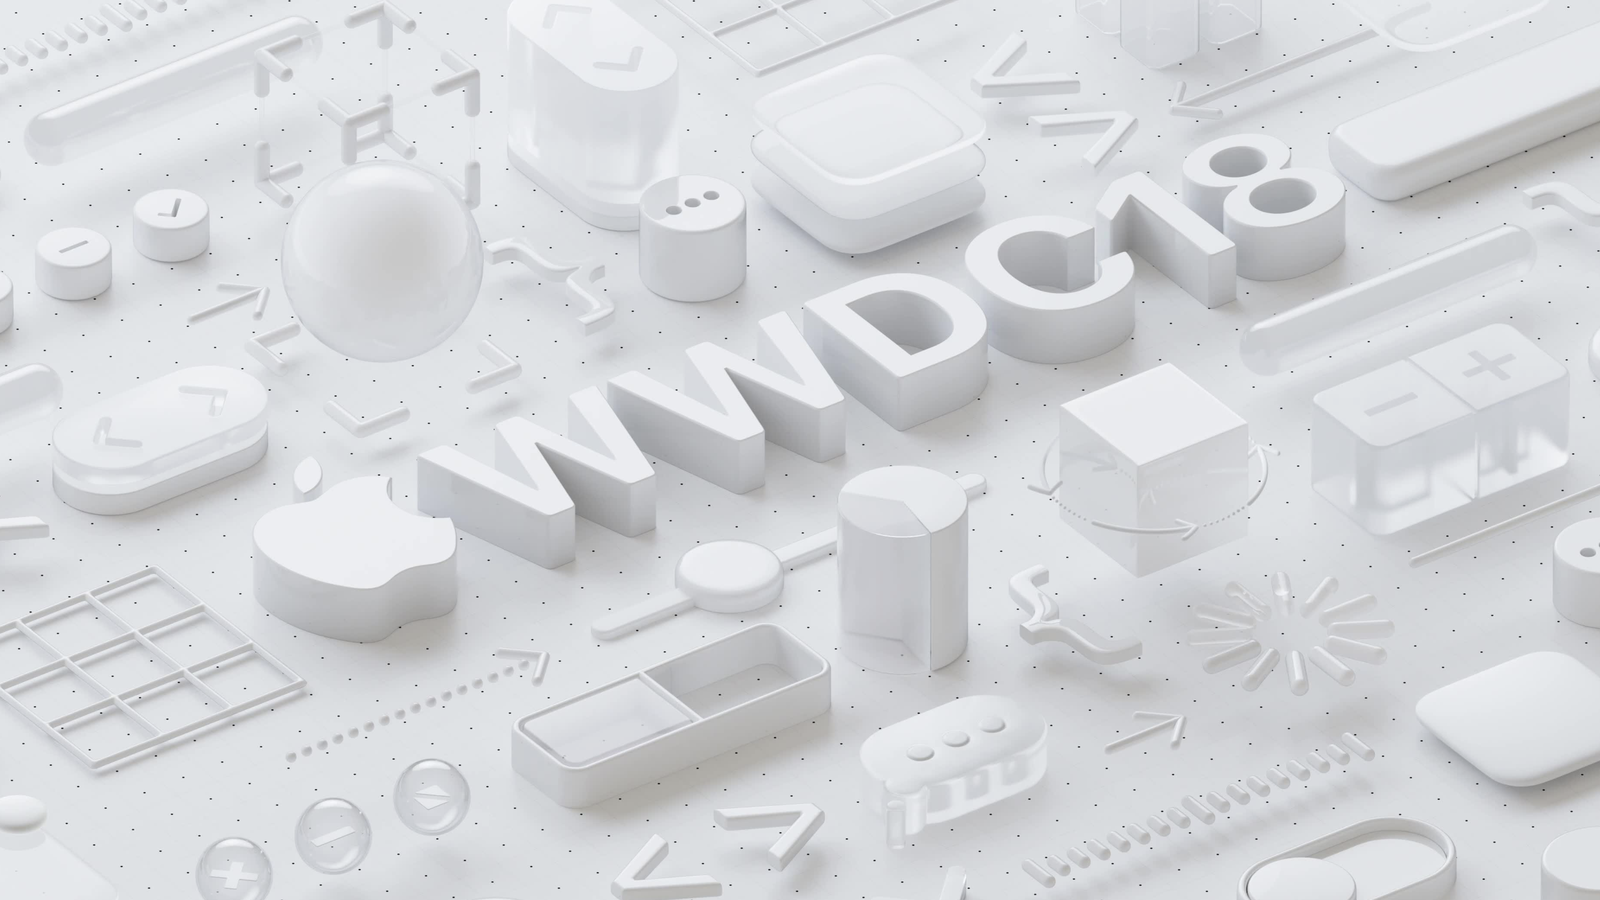 WWDC 2018: iOS 12, macOS Mojave, tvOS 12, watchOS 5